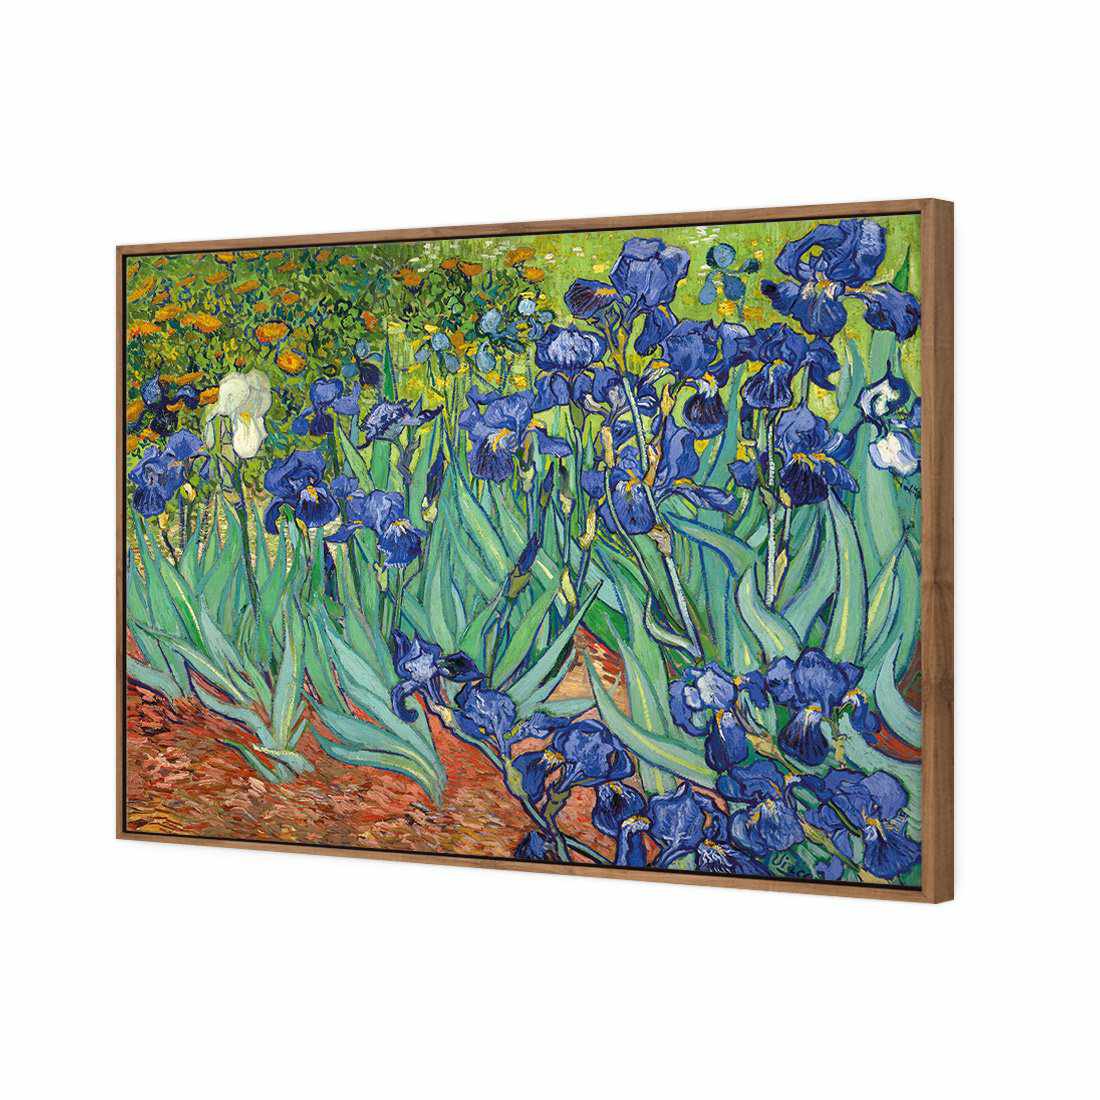 Irises 2 - Van Gogh Canvas Art-Canvas-Wall Art Designs-45x30cm-Canvas - Natural Frame-Wall Art Designs